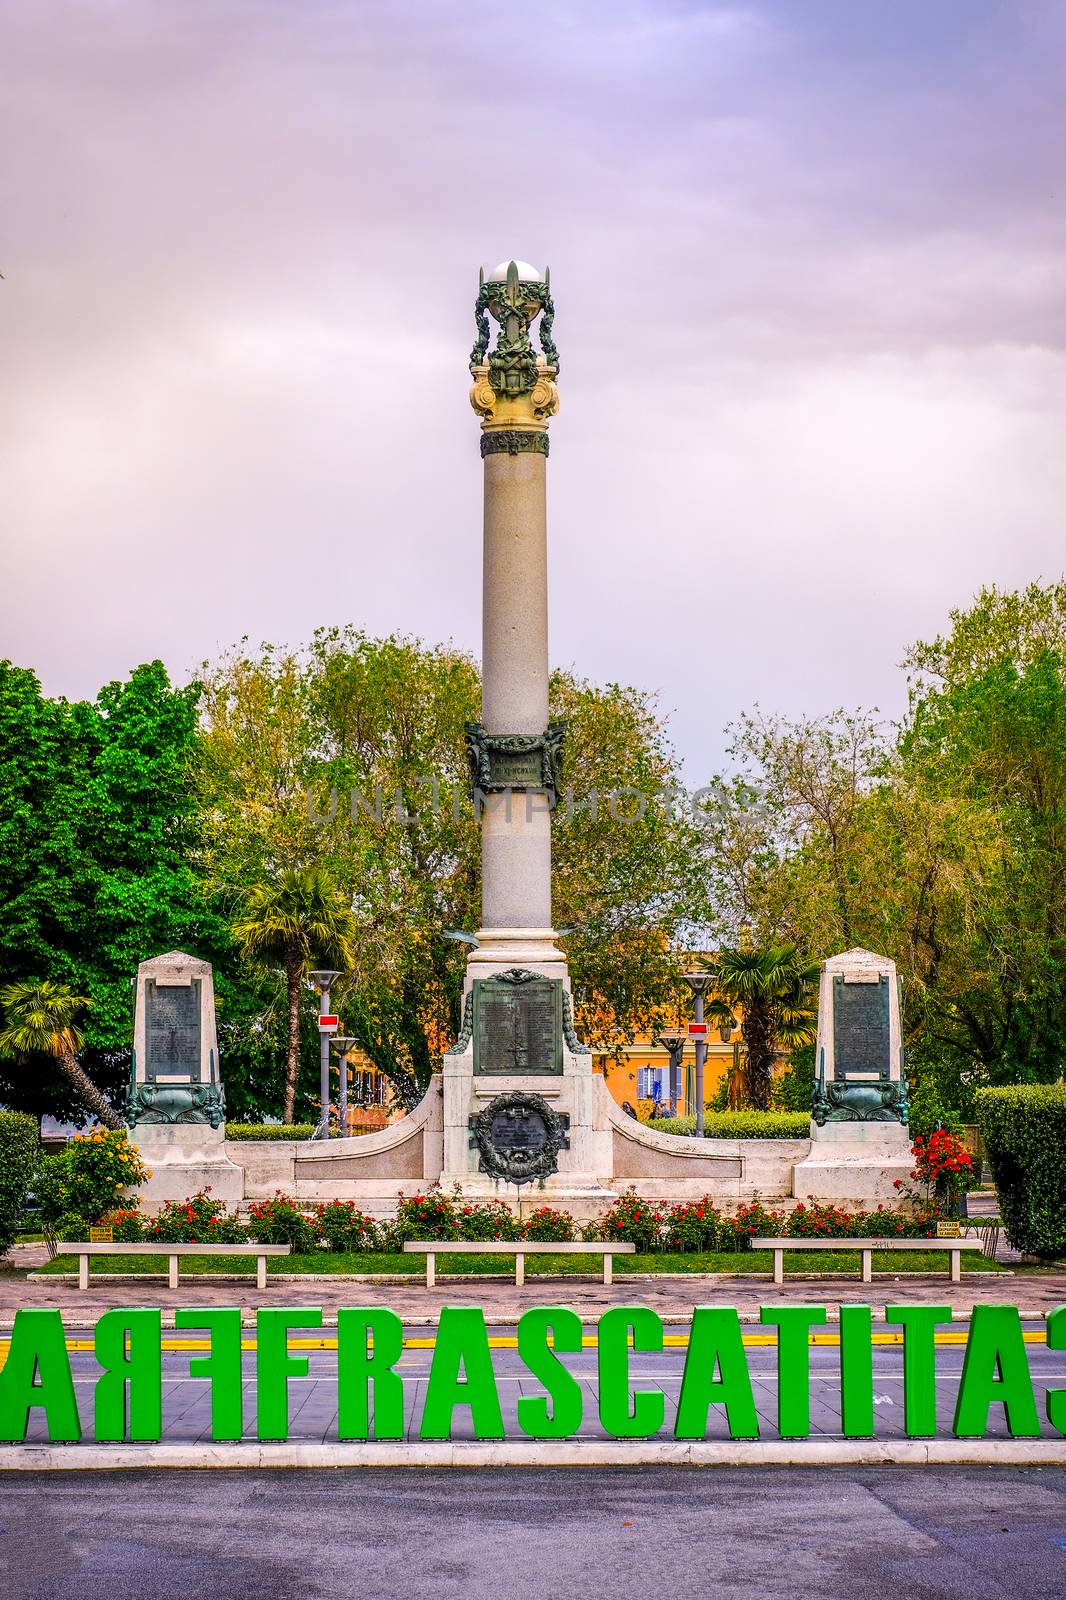 Monumento ai Caduti or War Memorial in Frascati - Rome province - Lazio region - Italy .